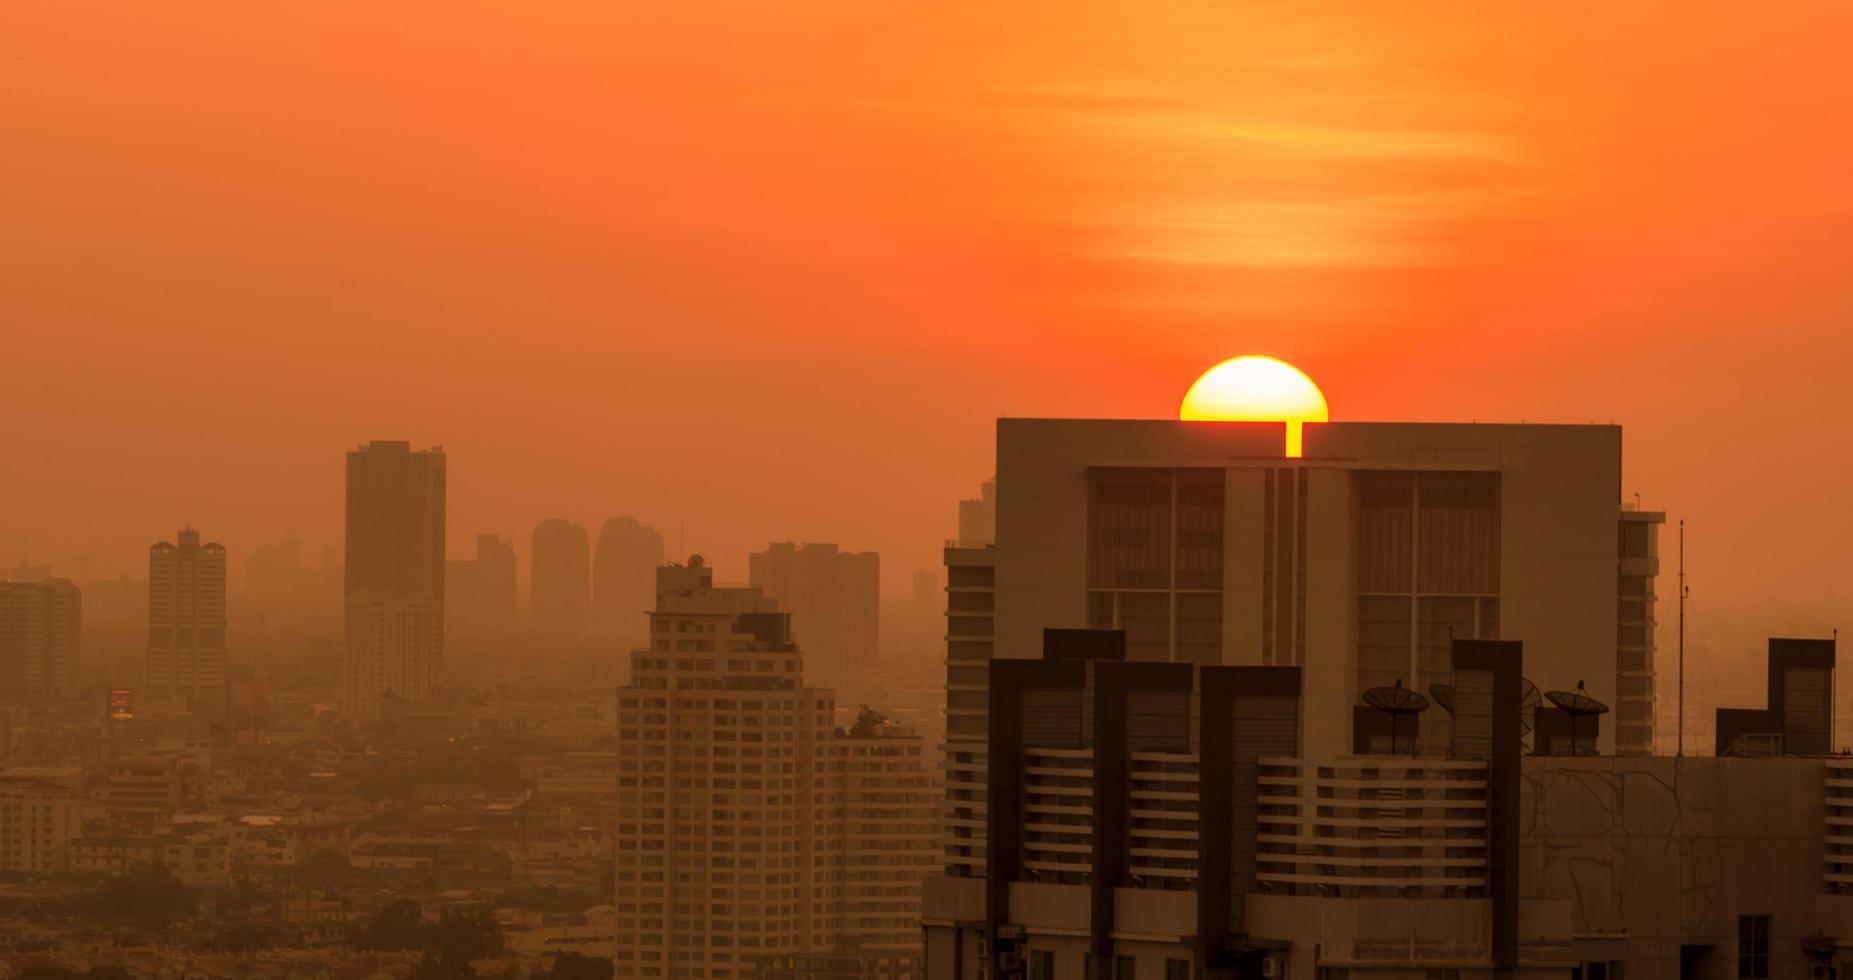 poluição do ar. smog e poeira fina da cidade coberta de pm2.5 pela manhã com o céu laranja do nascer do sol. paisagem urbana com ar poluído. ambiente sujo. poeira tóxica urbana. ar insalubre. vida urbana insalubre. foto